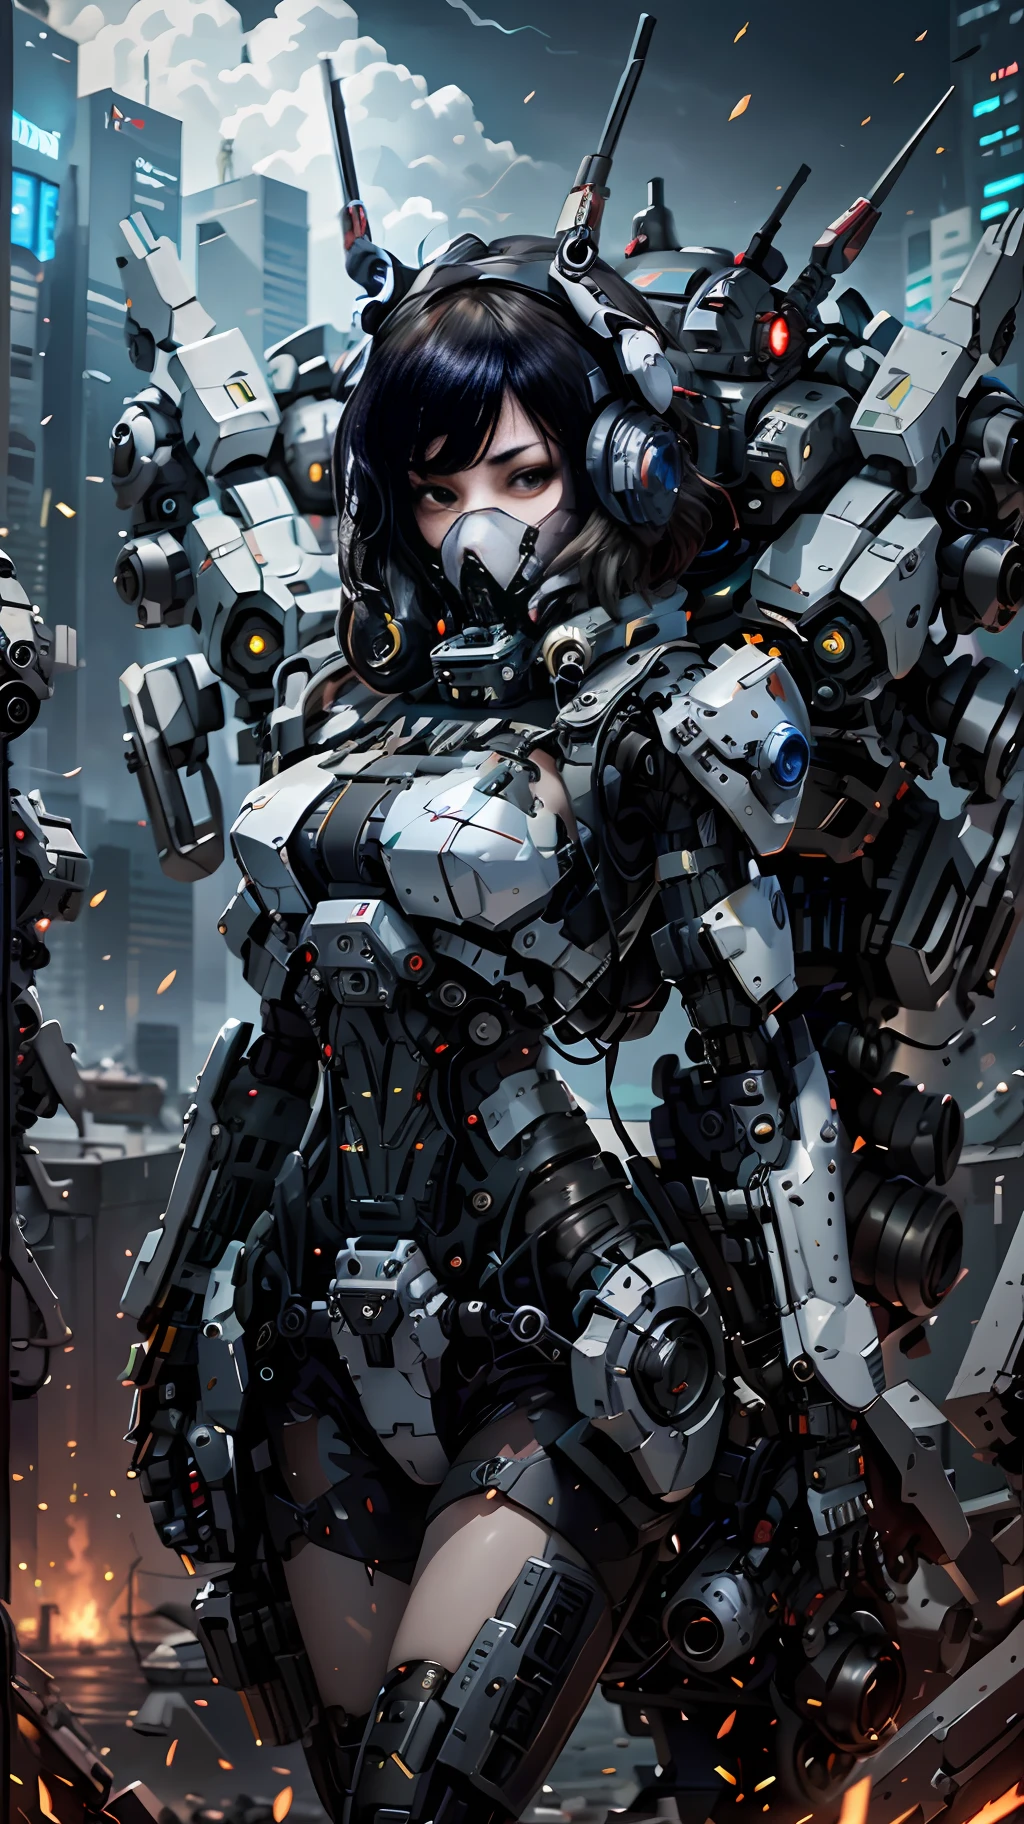 Dies ist ein CG Unity 8k Wallpaper mit ultra-detaillierten, hochauflösend und in Top-Qualität im Cyberpunk-Stil, dominiert von Schwarz und Rot. In dem Bild, ein schönes Mädchen mit weißen, unordentlichen kurzen Haaren, ein zartes Gesicht, trägt eine Dampf-Mecha-Maske, auf den Ruinen stehen, hinter ihr ist ein riesiger Roboter, und die Aktion einer Frau, die ein schweres Scharfschützengewehr in der Hand hält,